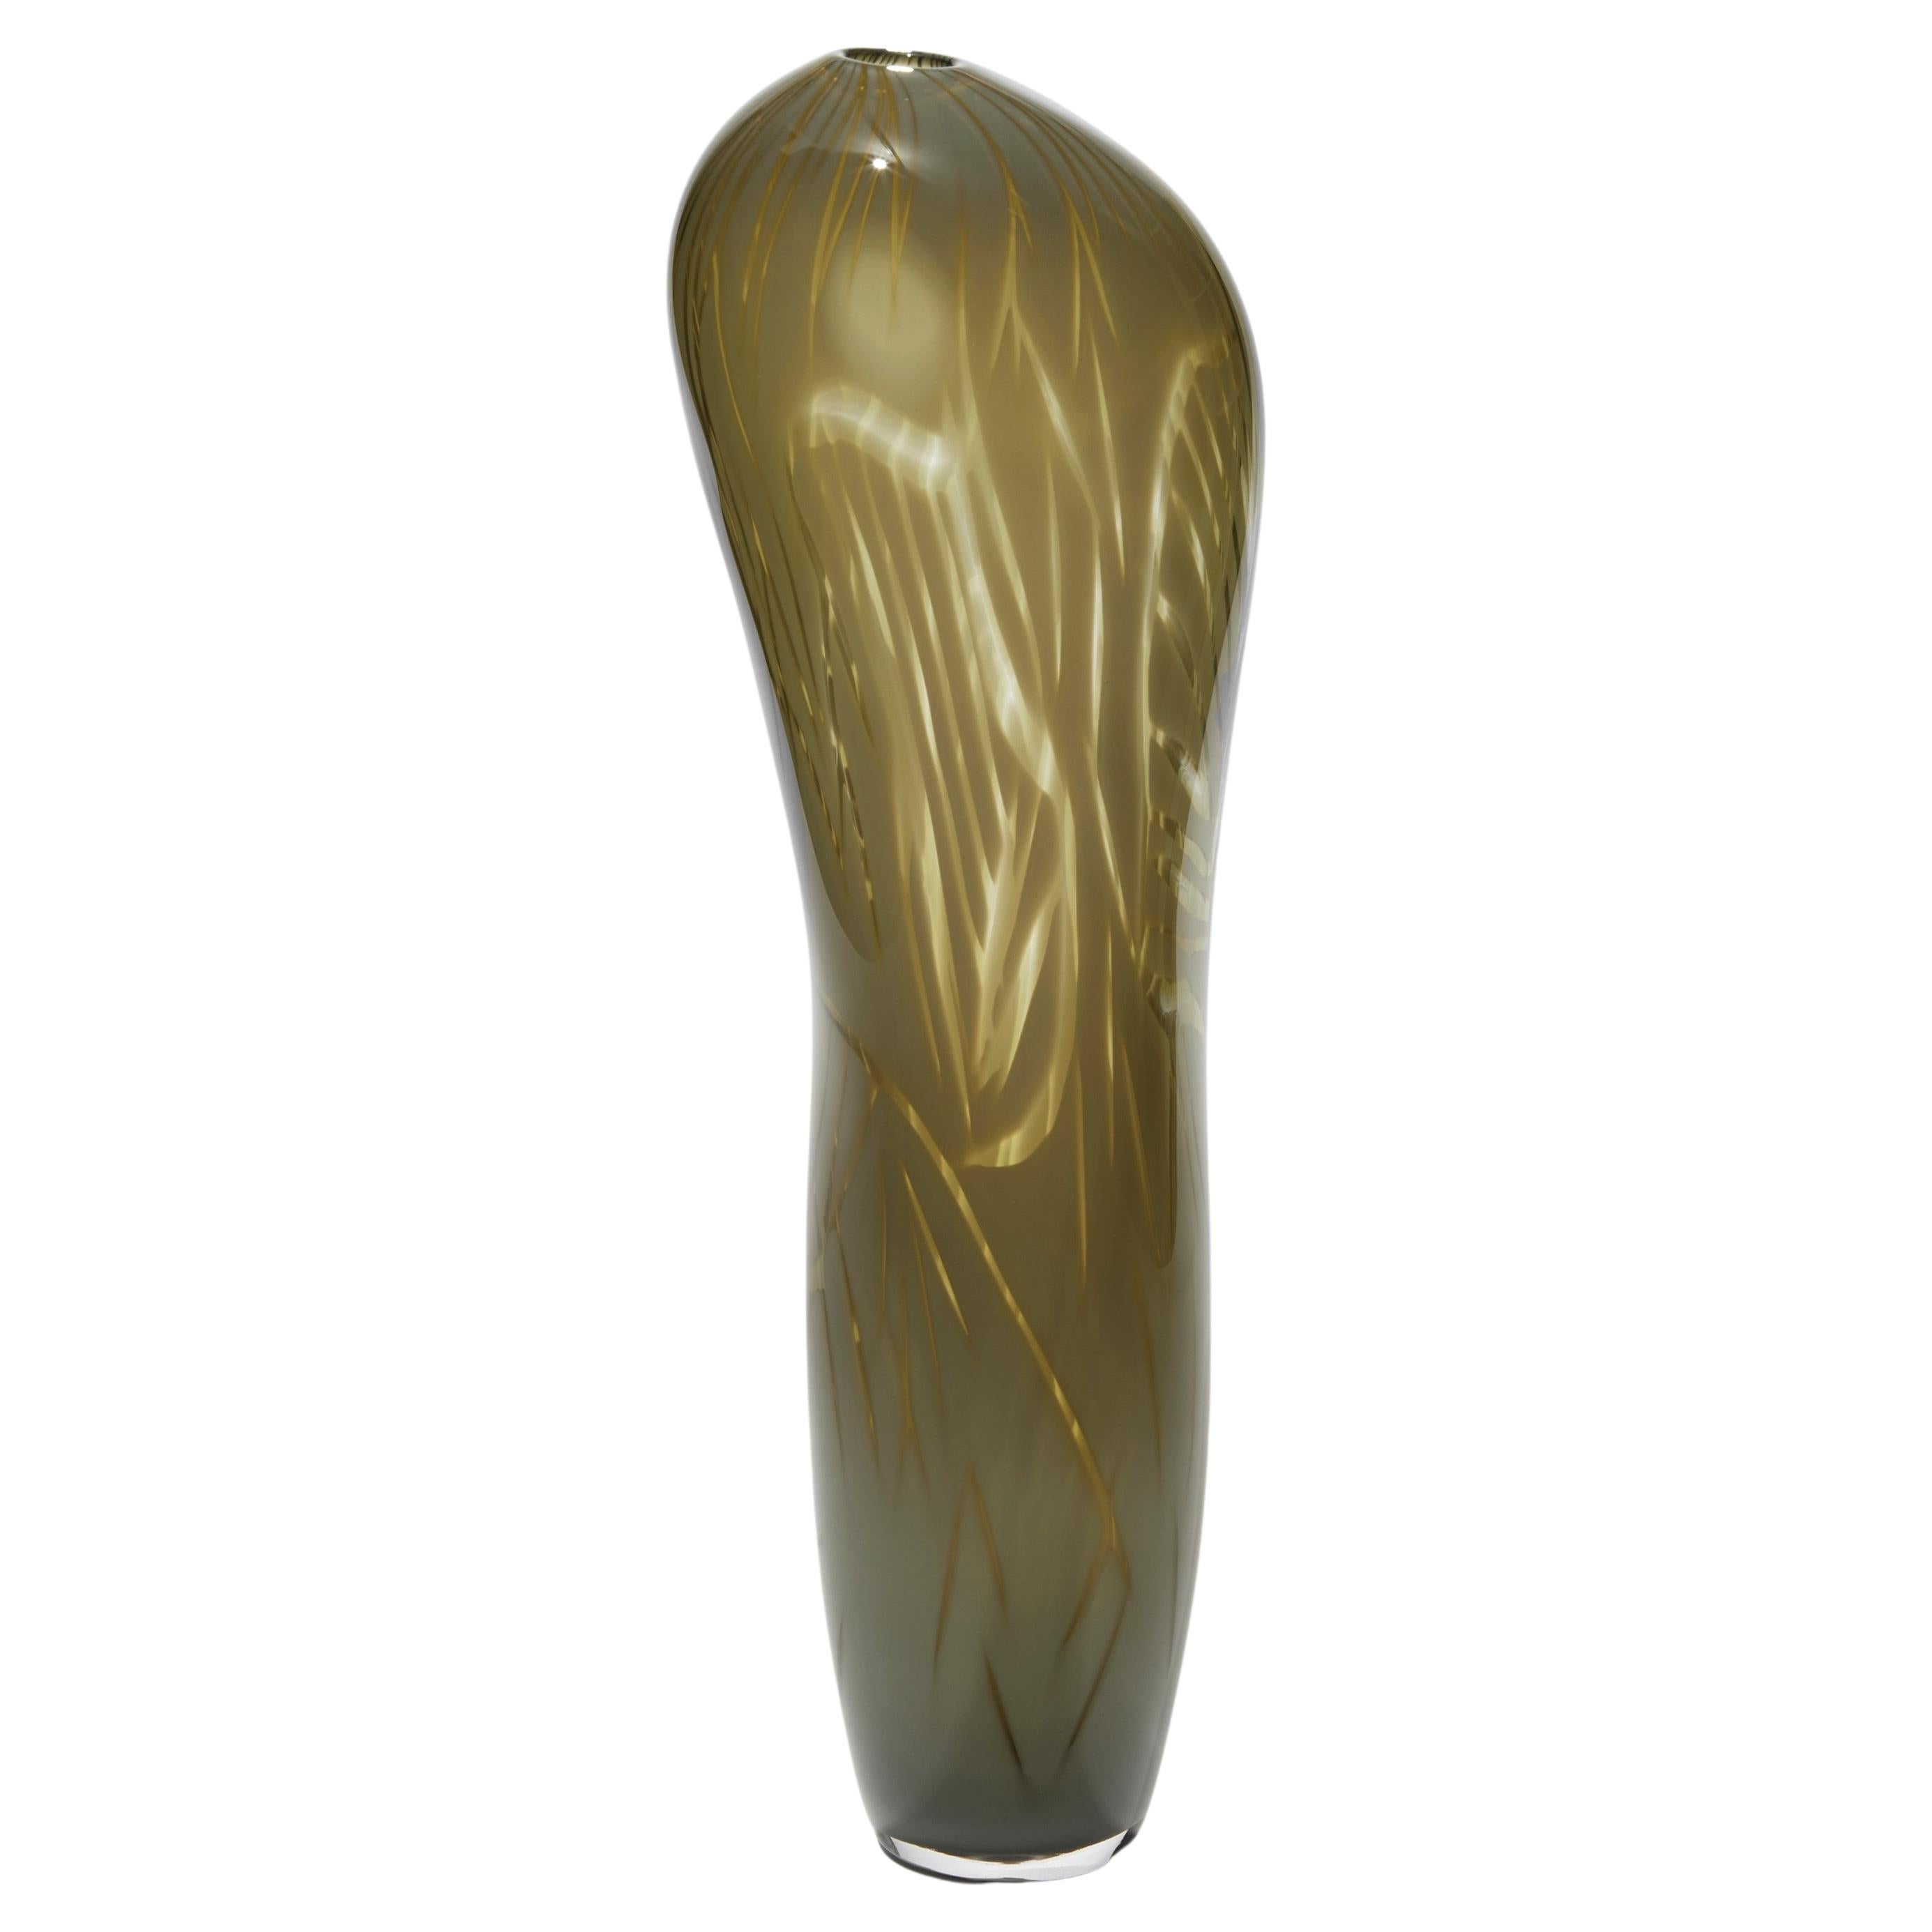  Nesiota, oliv/khakigrüne mundgeblasene Vase von Michèle Oberdieck